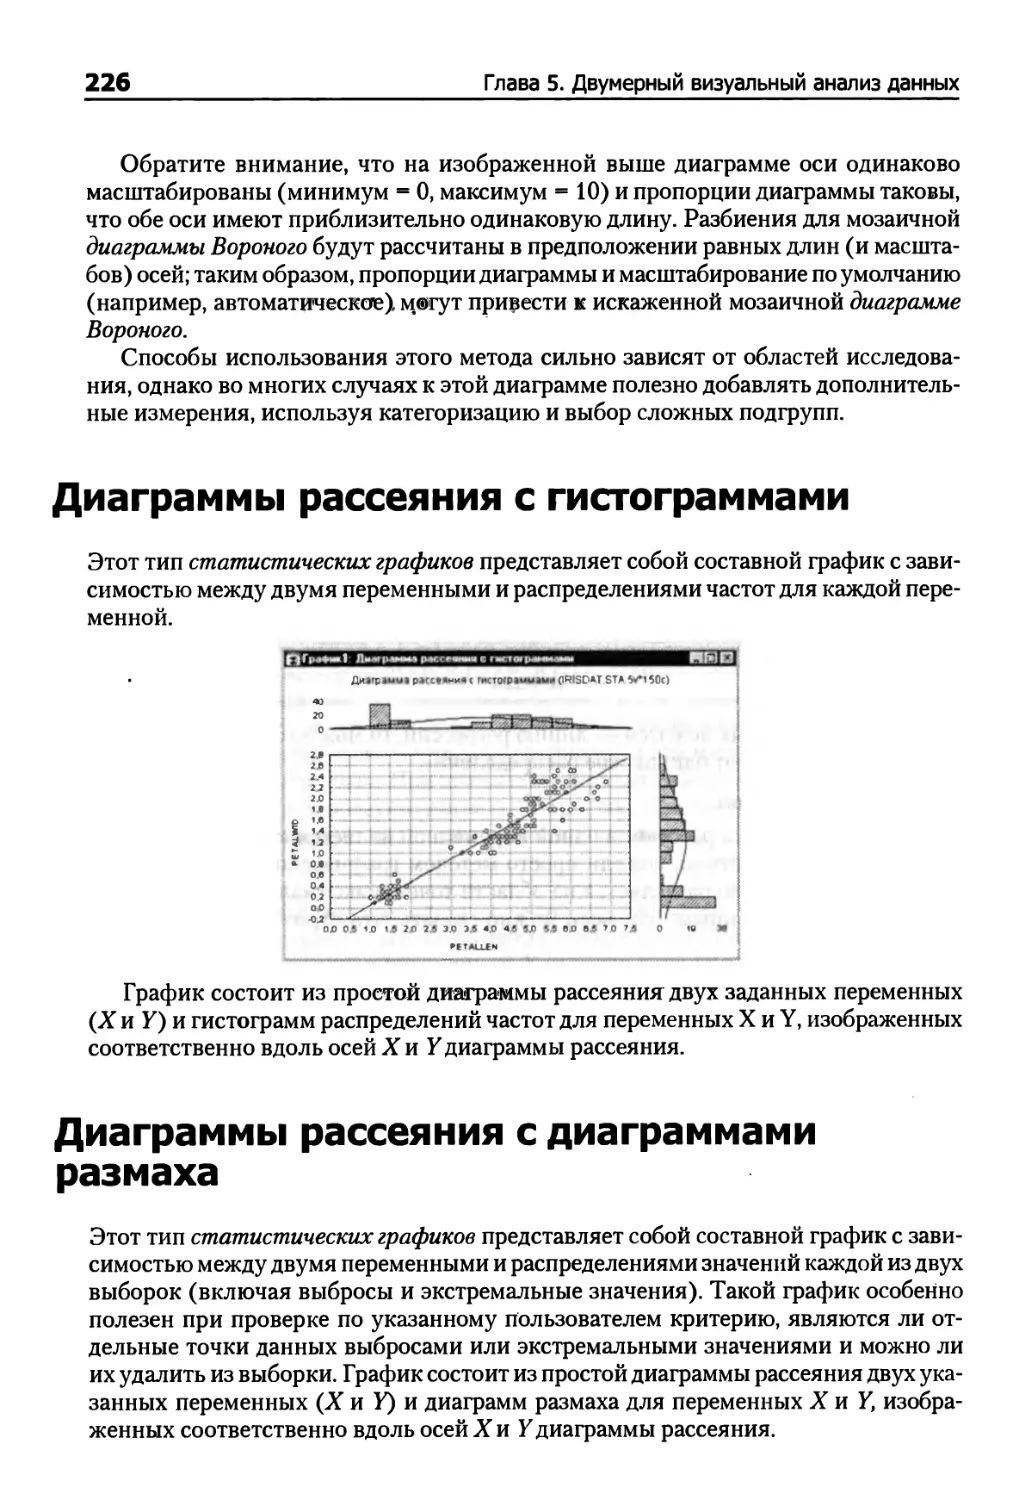 Диаграммы рассеяния с гистограммами
Диаграммы рассеяния с диаграммами размаха